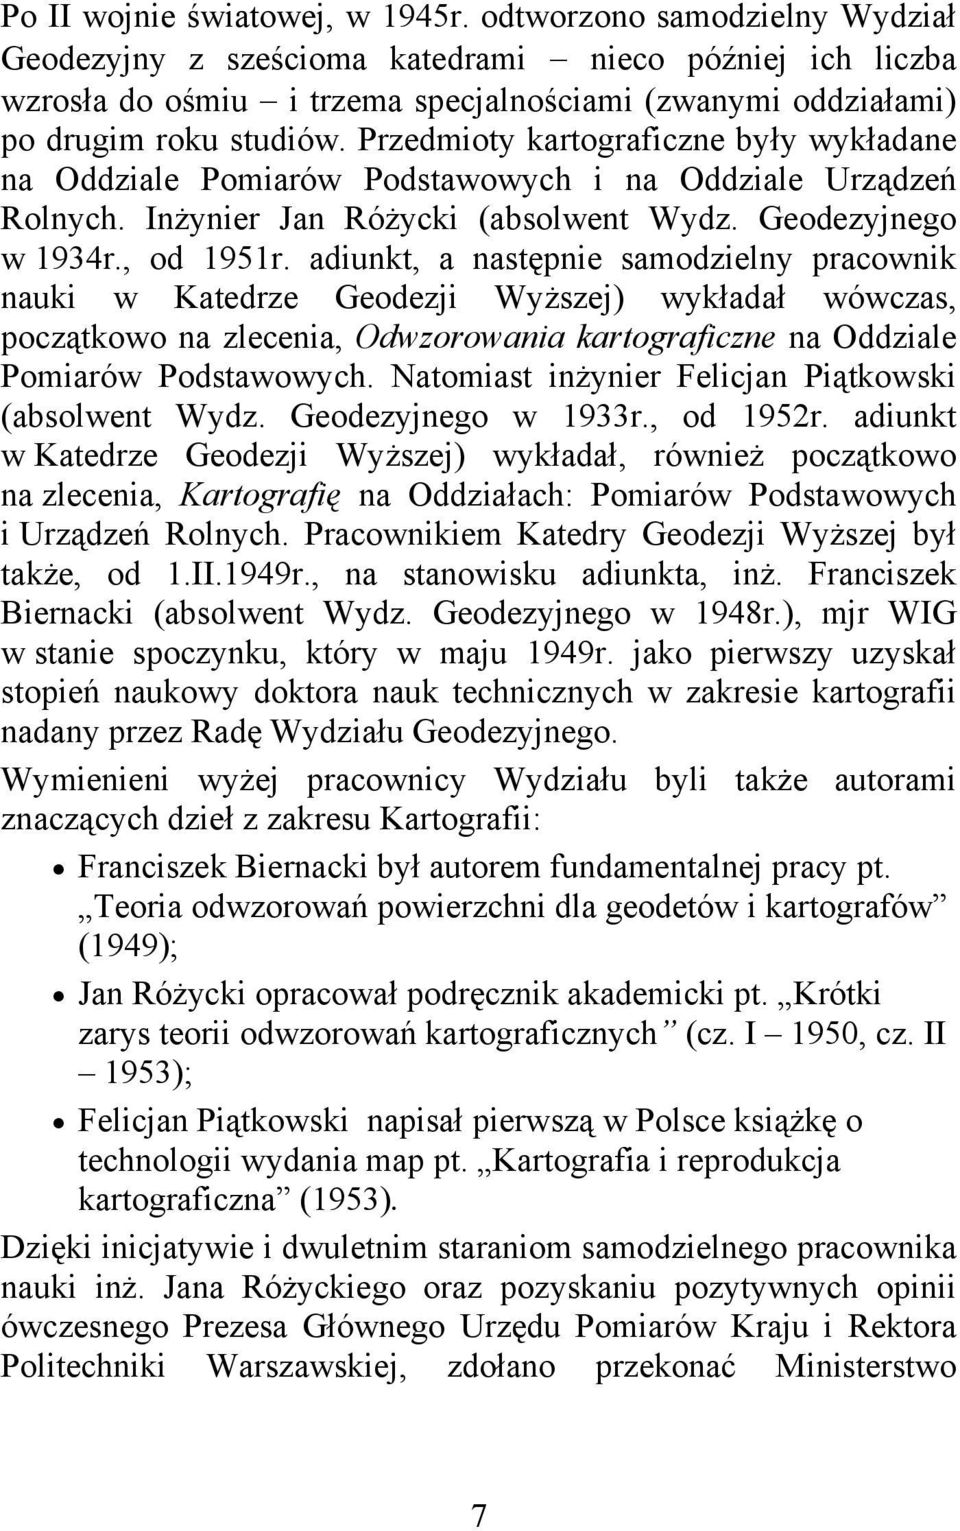 Przedmioty kartograficzne były wykładane na Oddziale Pomiarów Podstawowych i na Oddziale Urządzeń Rolnych. Inżynier Jan Różycki (absolwent Wydz. Geodezyjnego w 1934r., od 1951r.